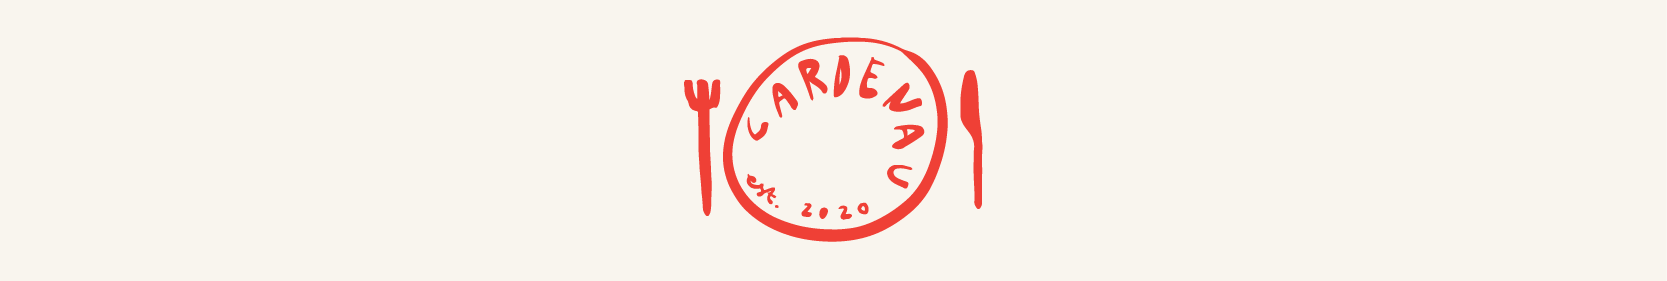 CARDENAU sublogo i rød, ligner en tallerken med kniv og gaffel.